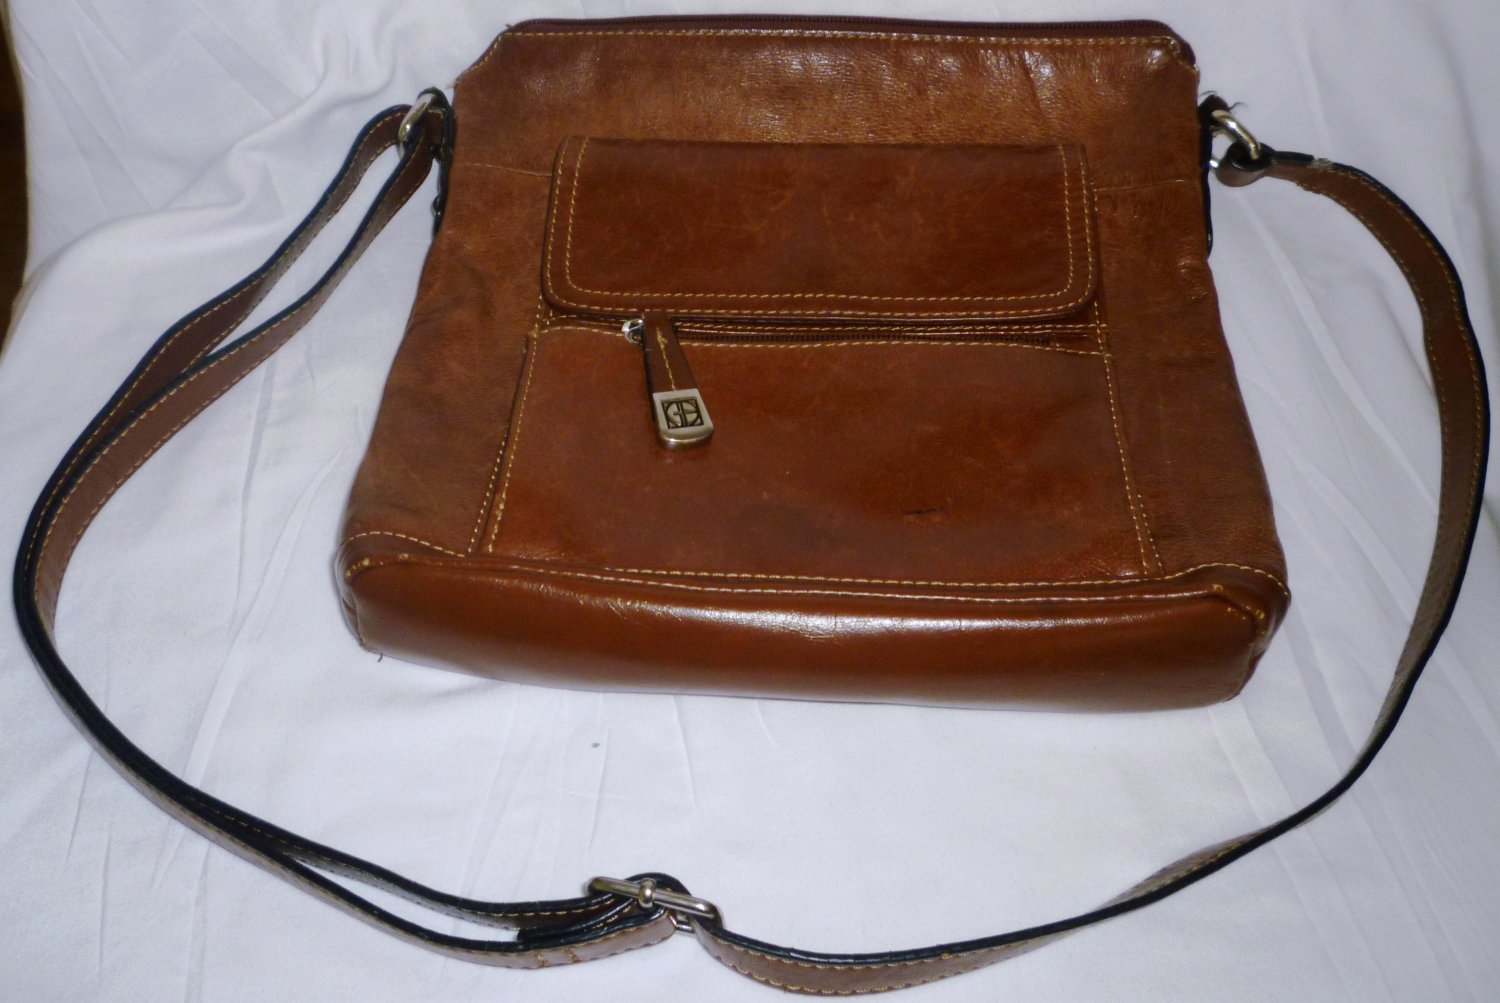 Vintage GIANI BERNINI Genuine Leather Burgundy Shoulder Bag 